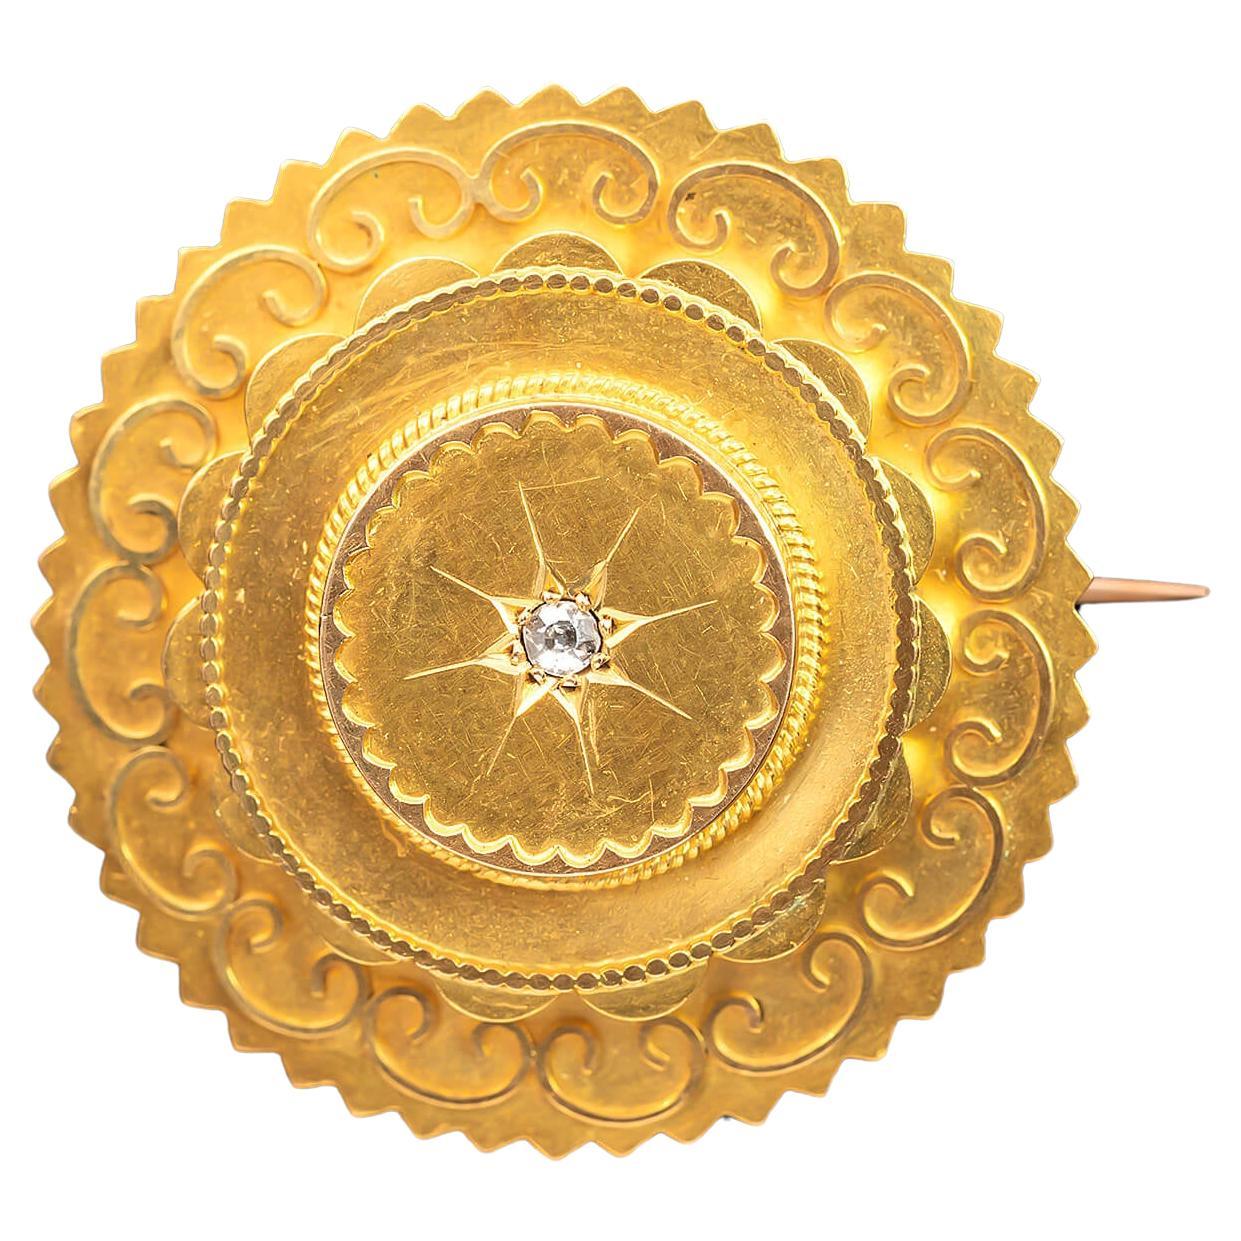 Medaillonbrosche im etruskischen Revival-Stil mit Diamantenbesatz, um 1880